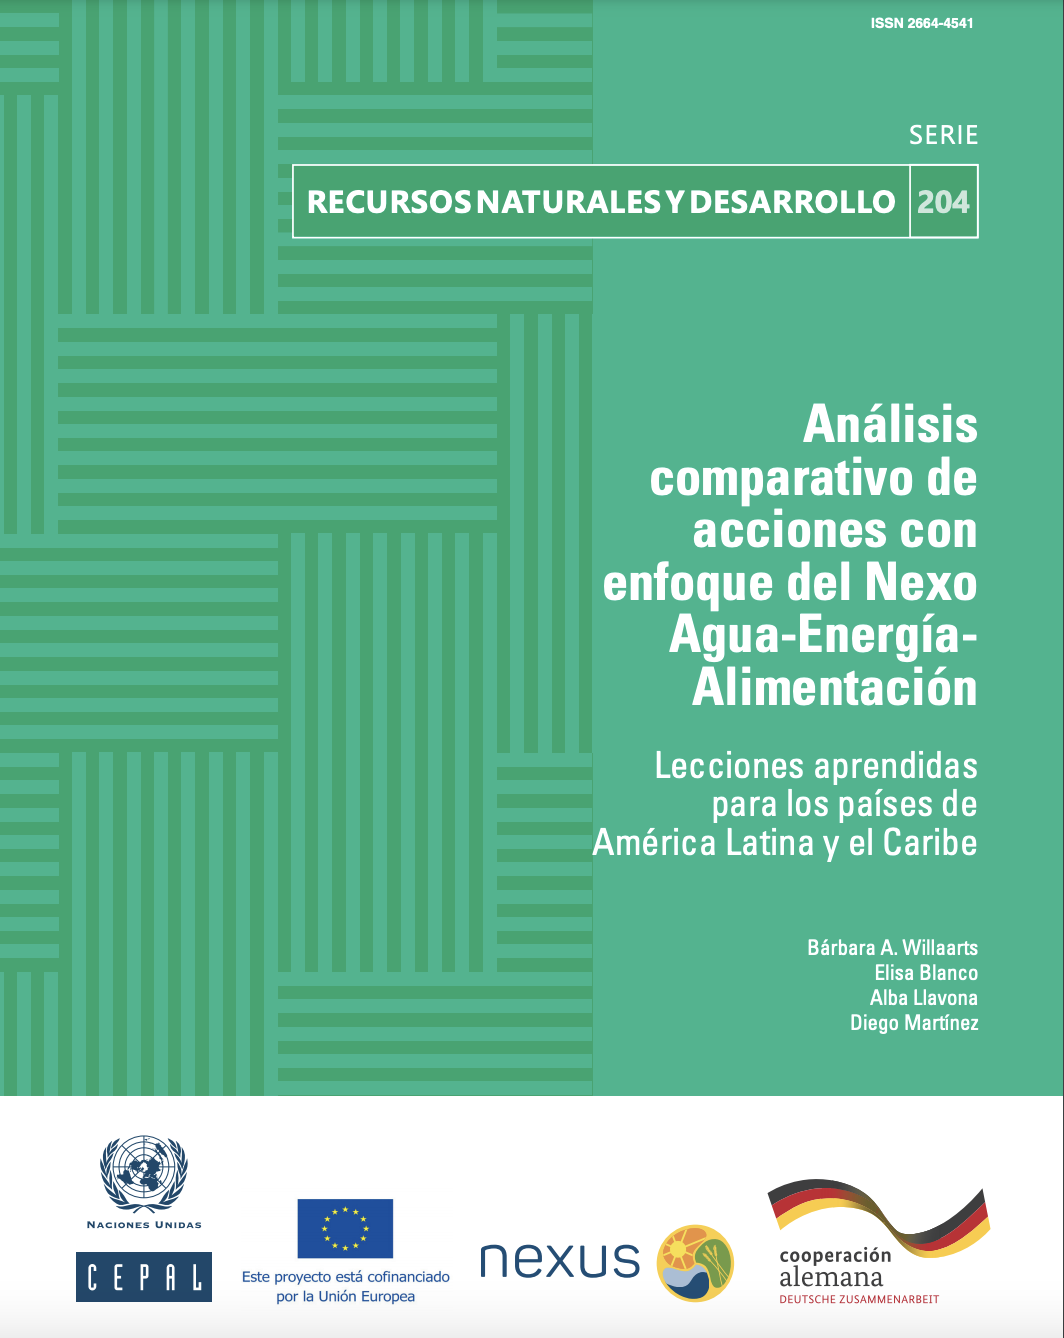 Análisis comparativo de acciones con enfoque del Nexo Agua-Energía-Alimentación: lecciones aprendidas para los países de América Latina y el Caribe (CEPAL)